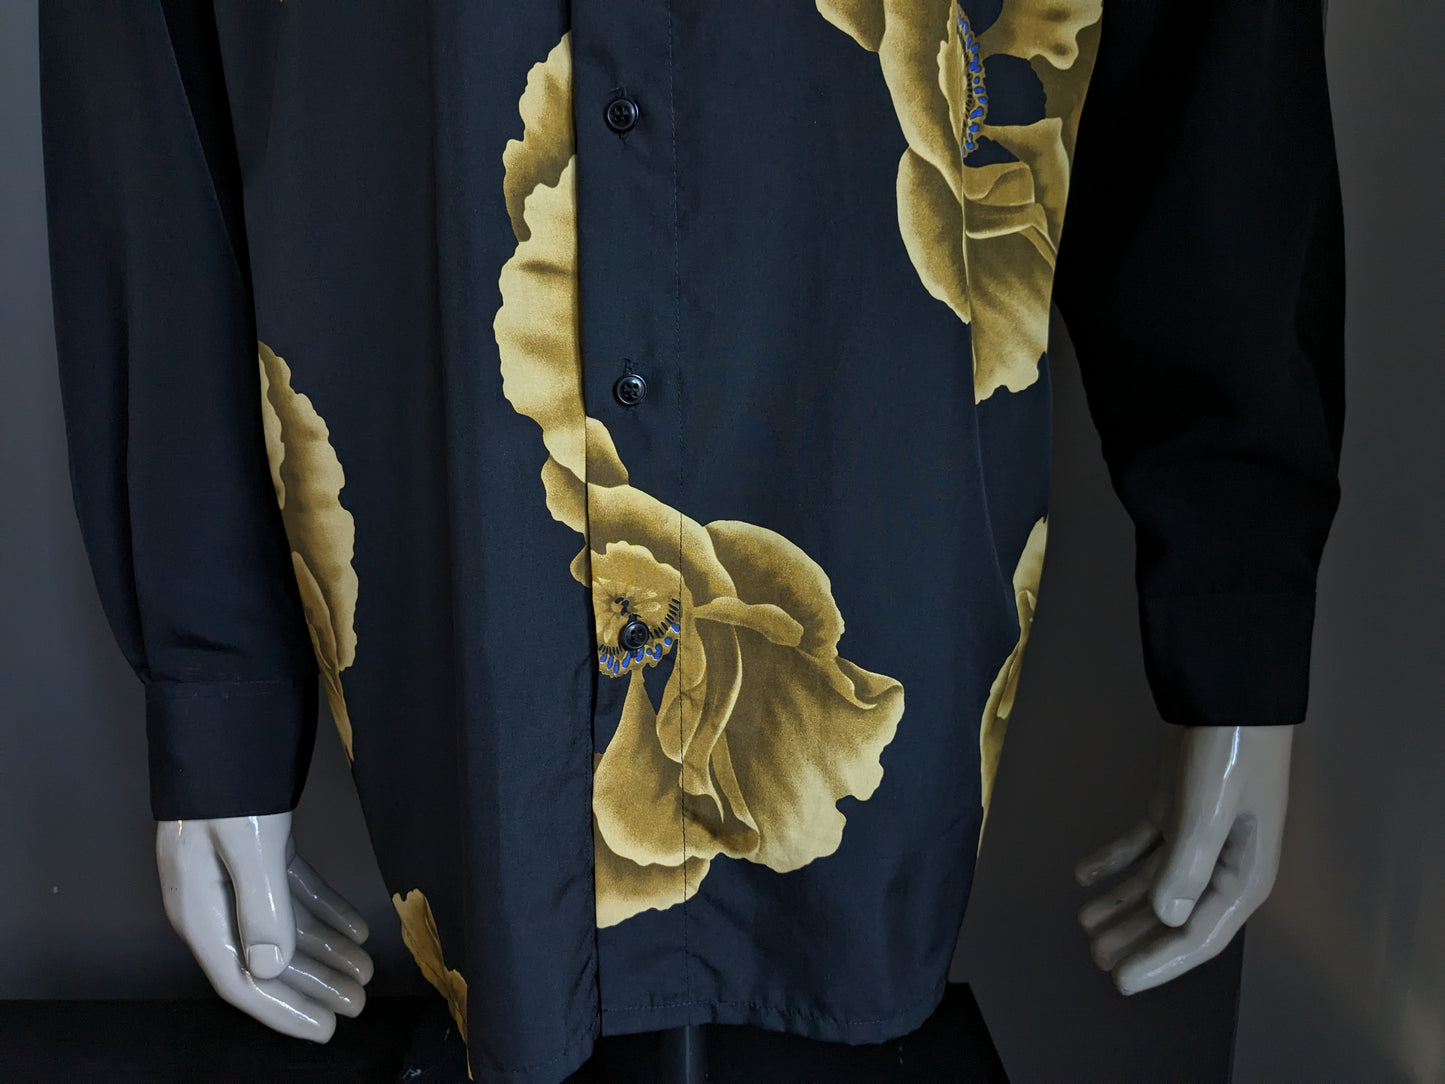 Vintage St. Clou shirt. Black gold -colored flowers print. Size XL.